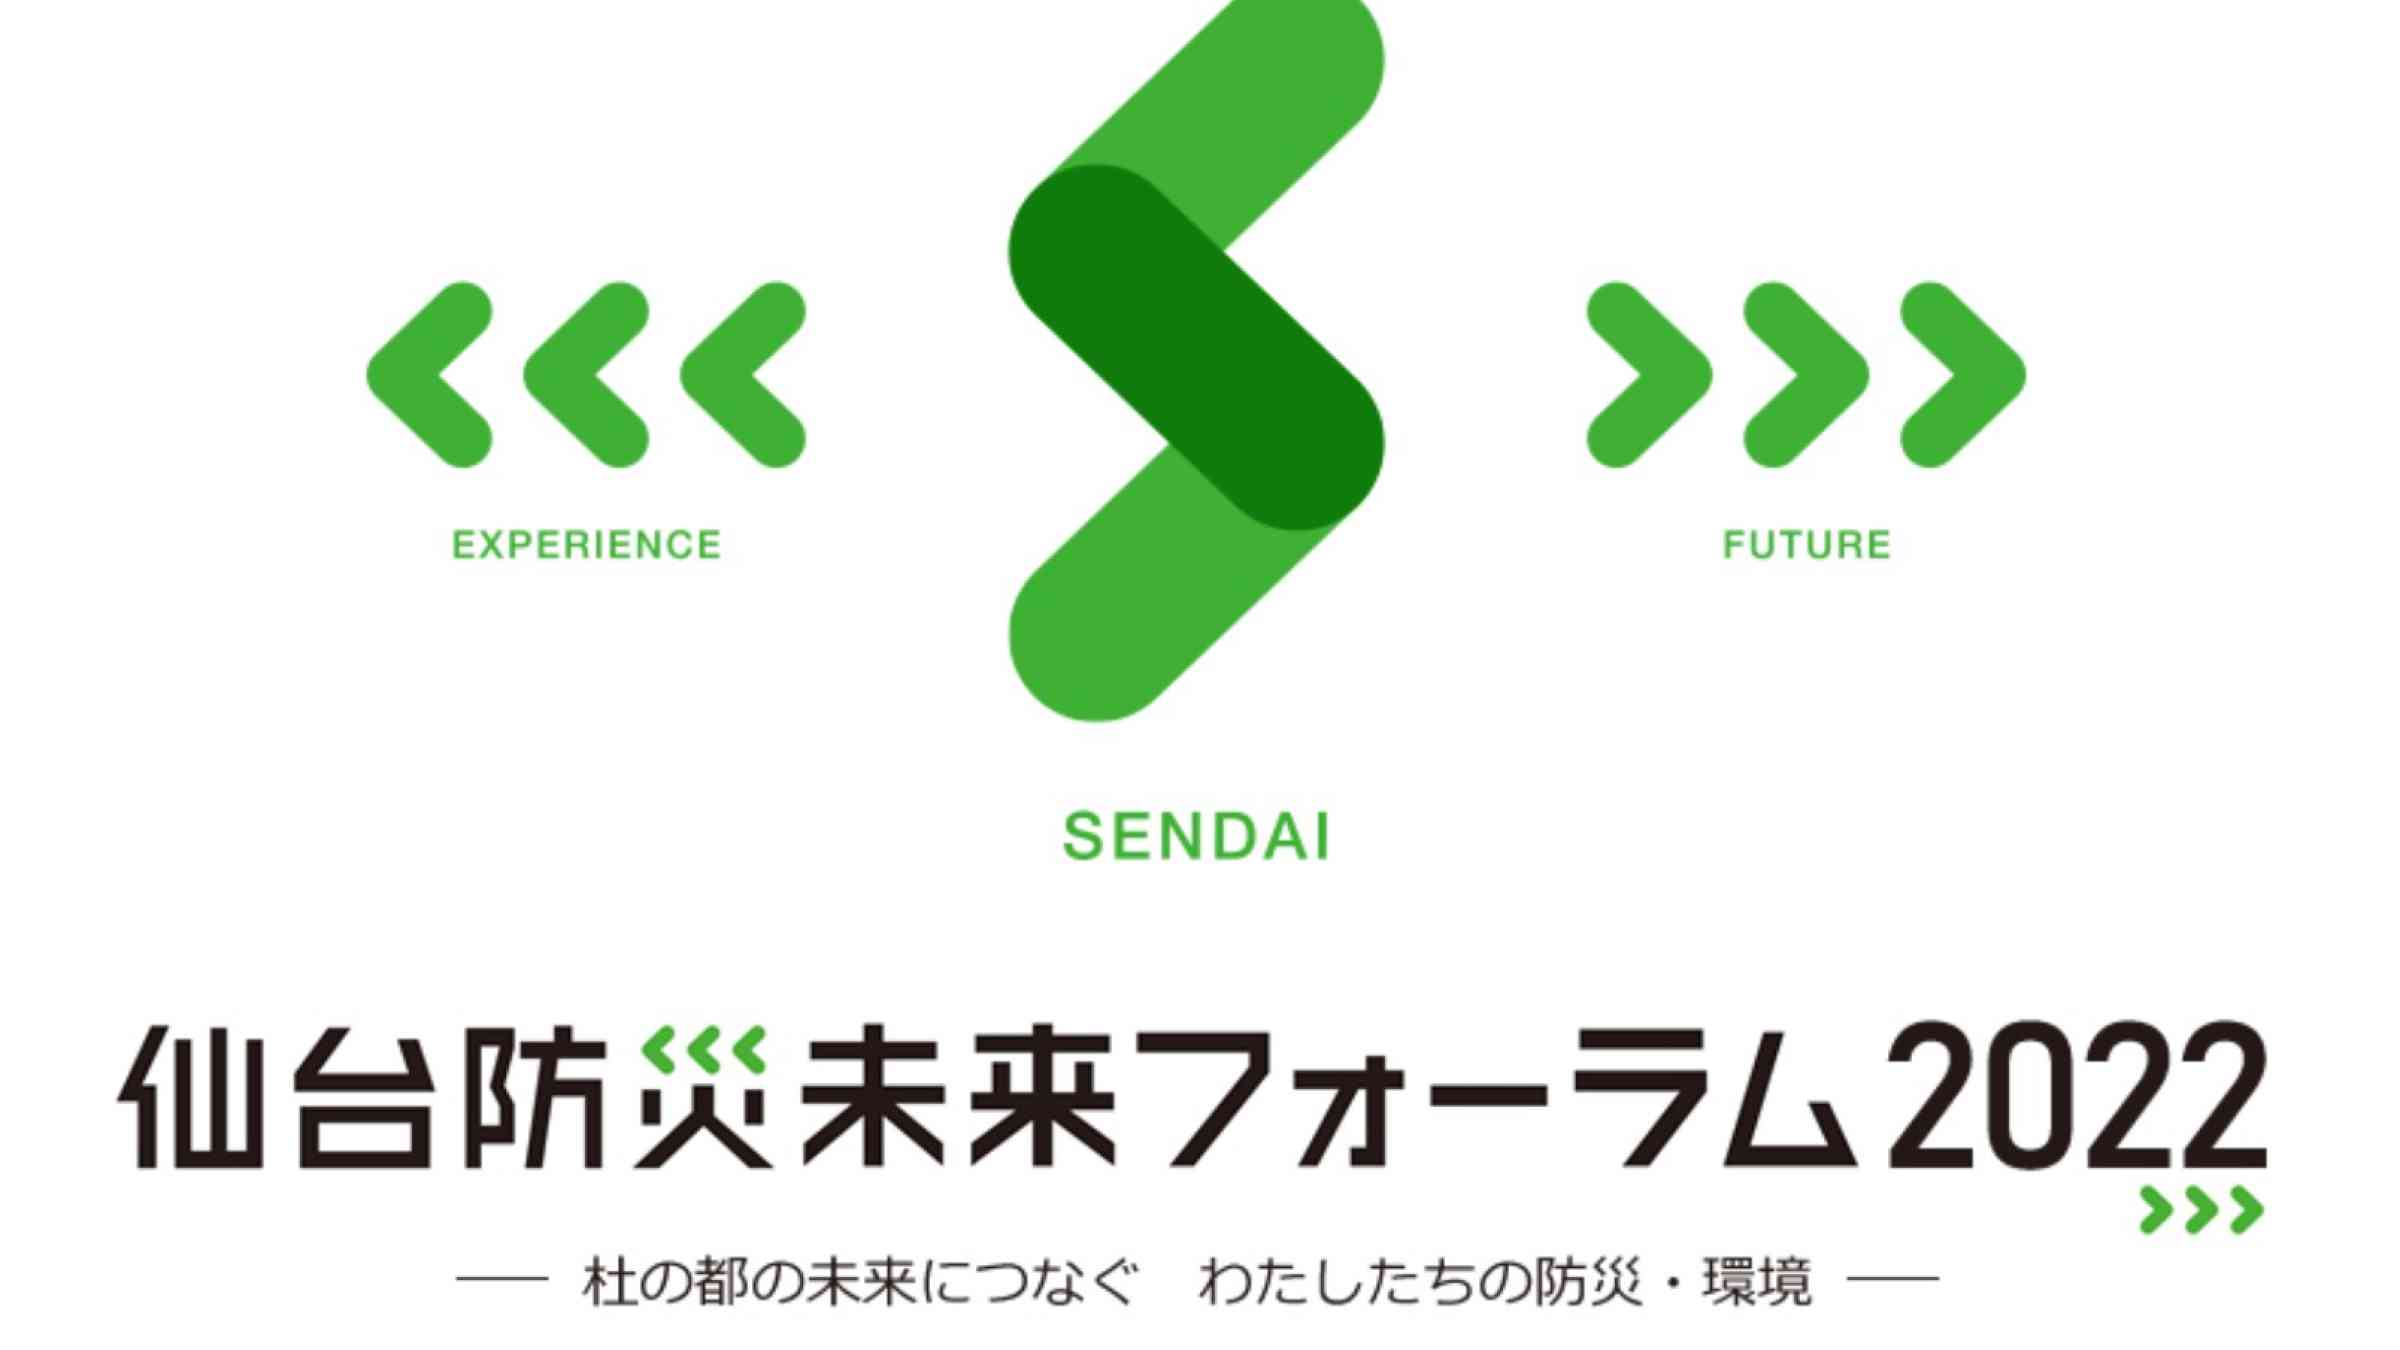 Sendai Mirai Forum 2022 banner logo